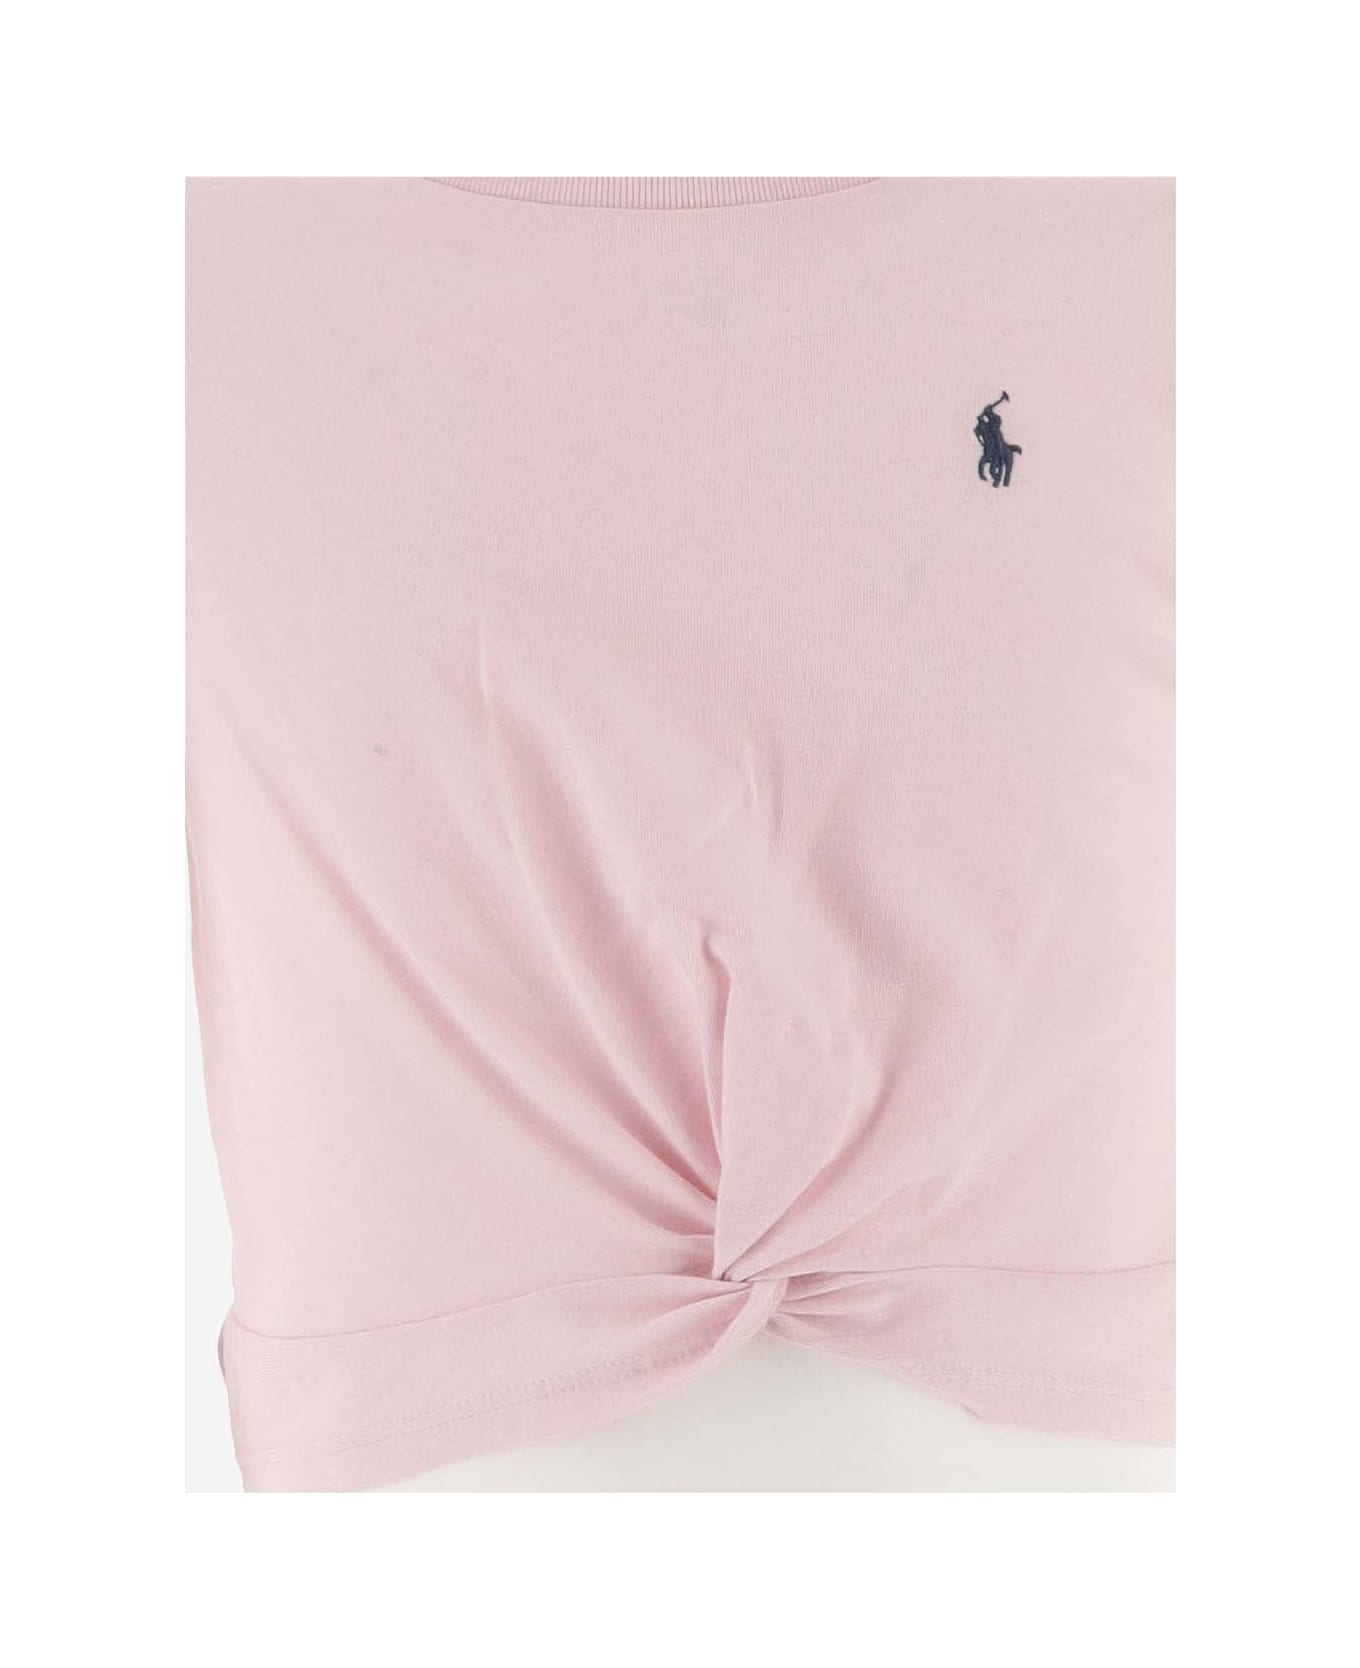 Ralph Lauren Cotton Crop T-shirt With Logo - Rosa